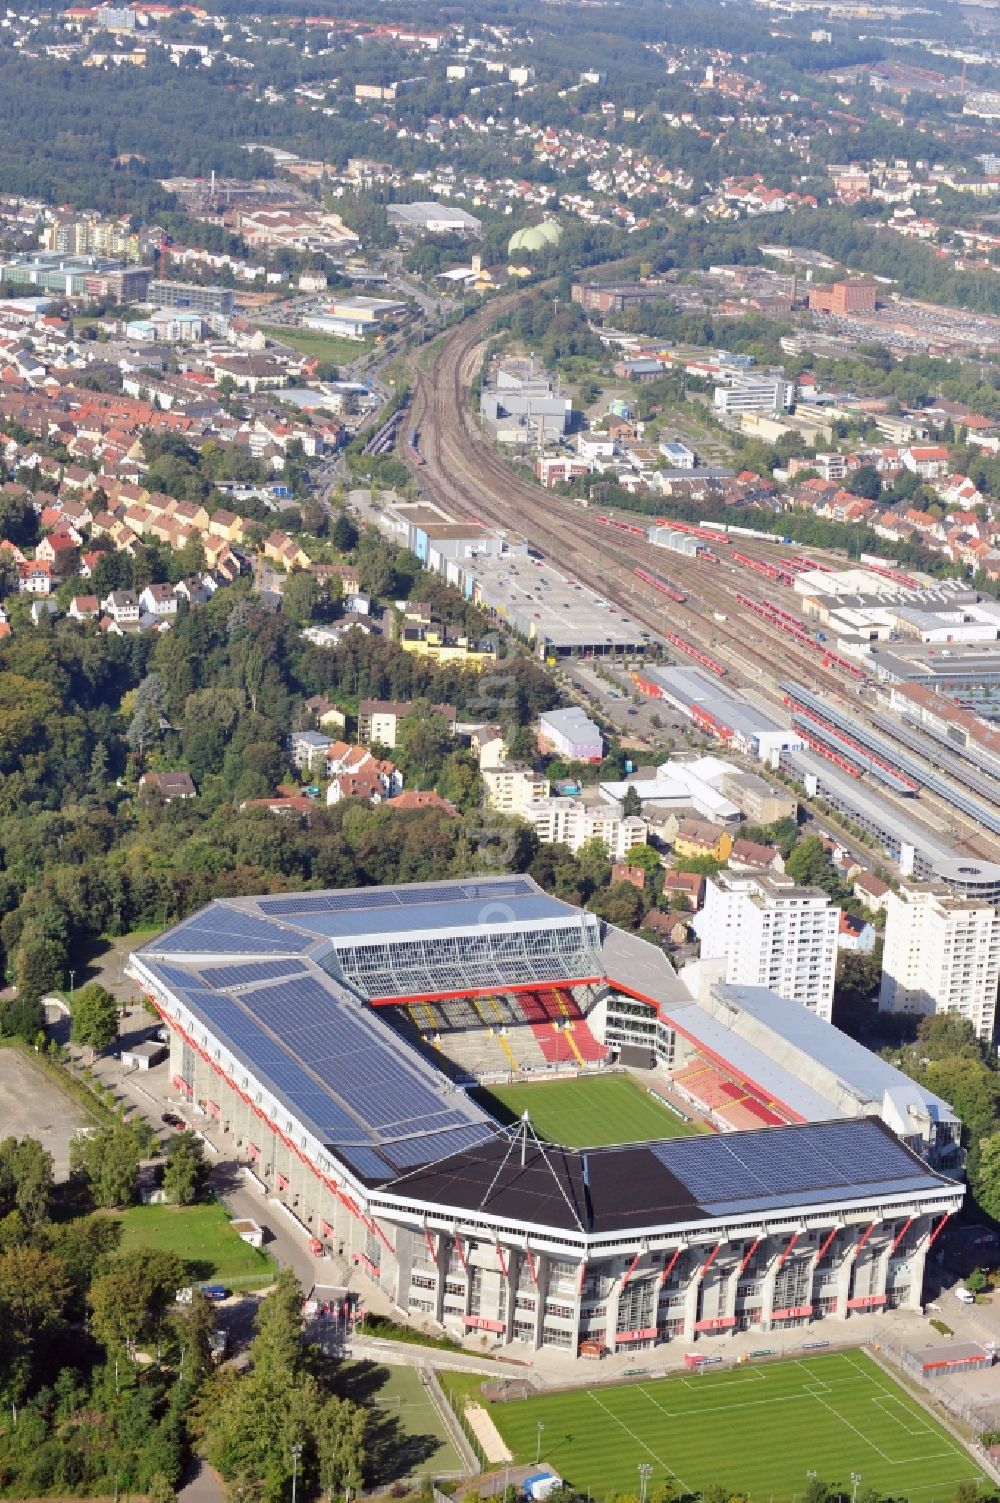 Kaiserslautern von oben - Sportstätten-Gelände der Arena des Stadion Fritz-Walter-Stadion in Kaiserslautern im Bundesland Rheinland-Pfalz, Deutschland